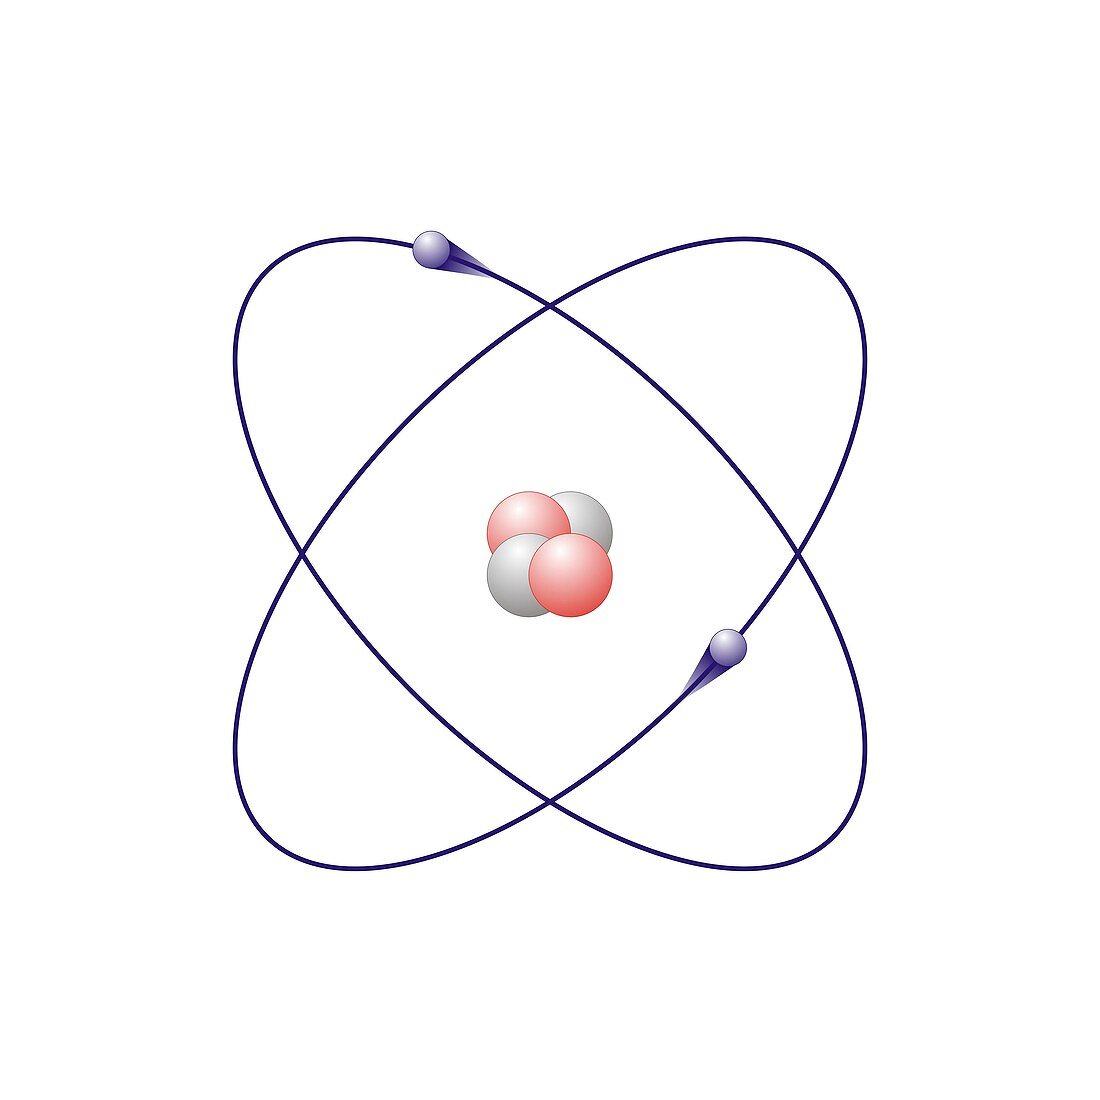 Helium,atomic model